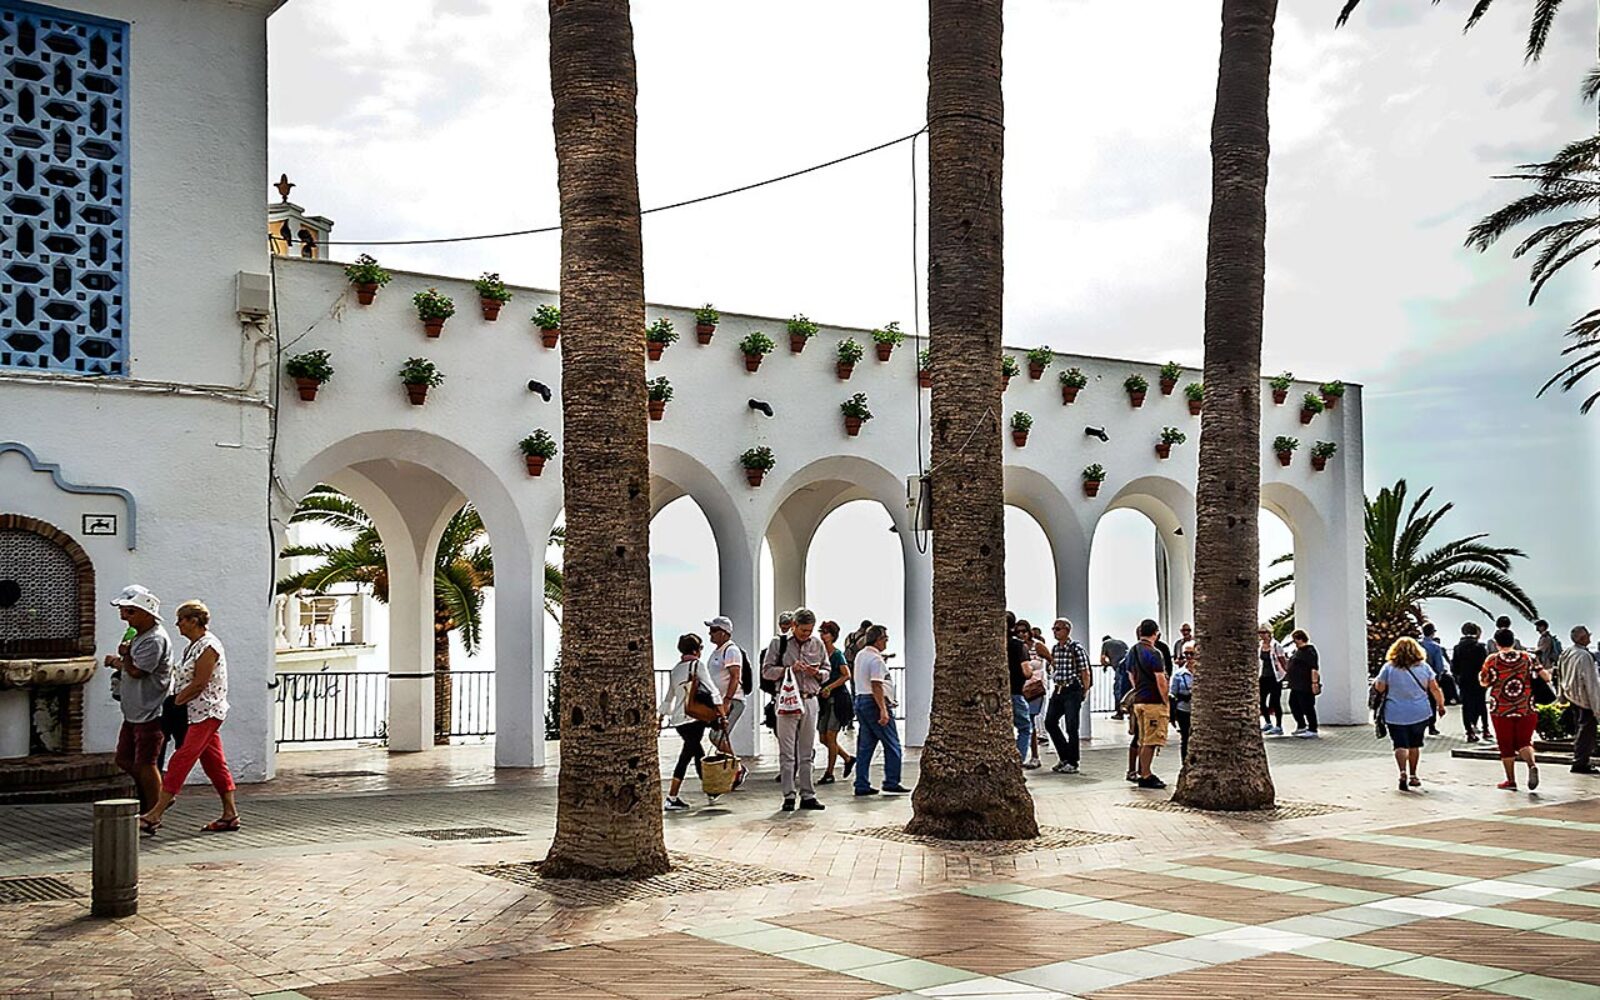 5 byer i Andalusien som du skal se - Nerja